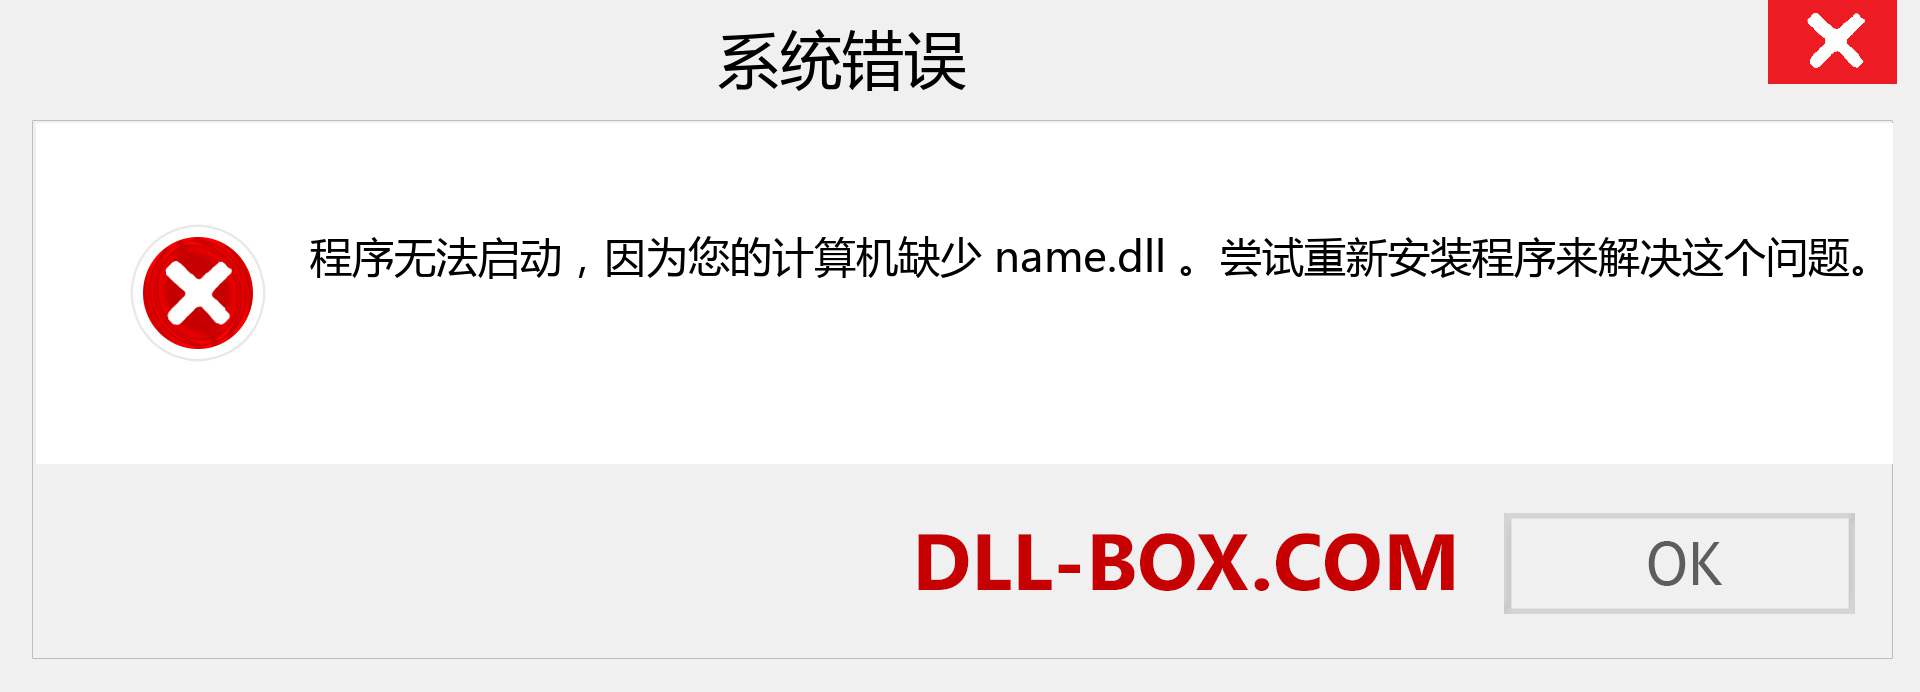 name.dll 文件丢失？。 适用于 Windows 7、8、10 的下载 - 修复 Windows、照片、图像上的 name dll 丢失错误